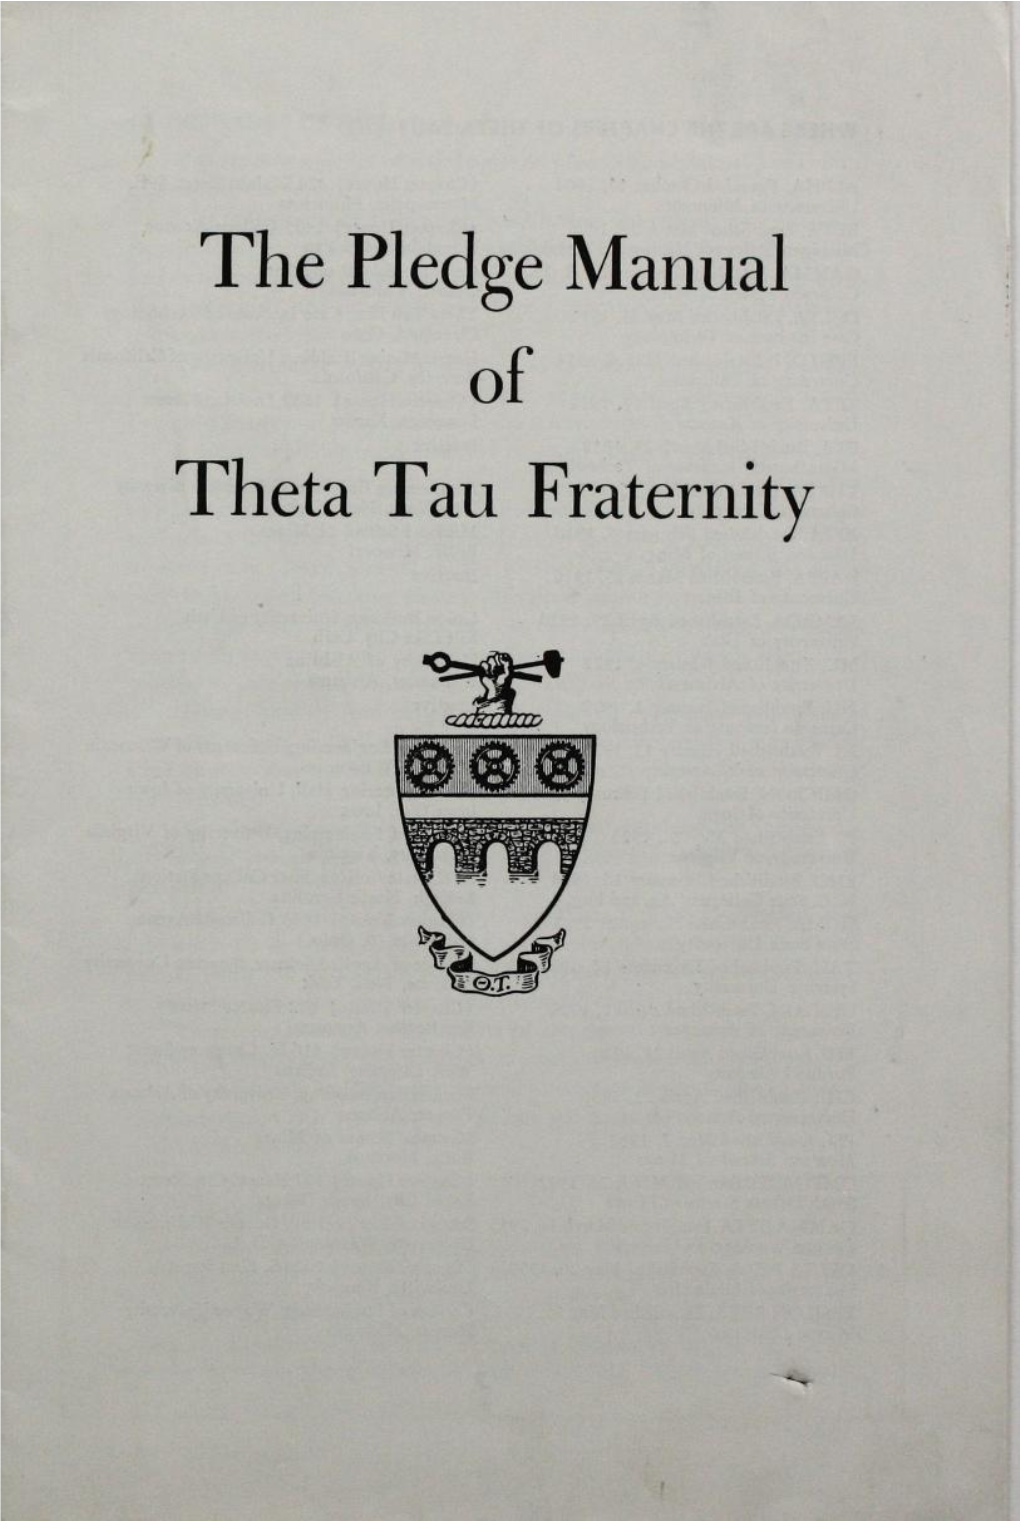 The Pledge Manual of Theta Tau Fraternity